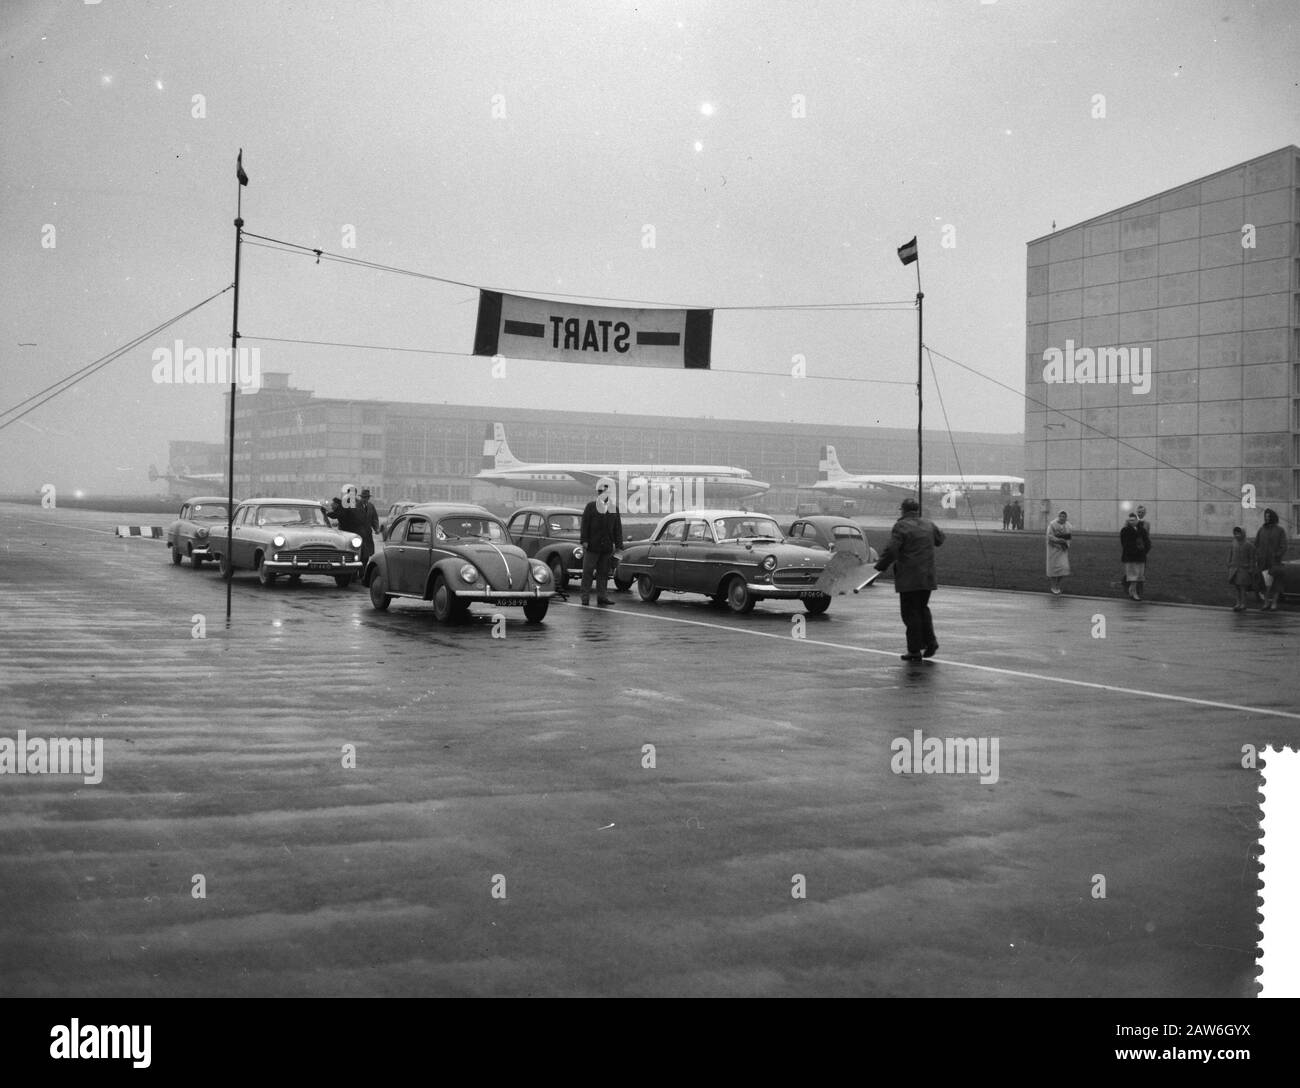 KLMautoralley, Beginn der Sonderstufe auf einer Landebahn, ZD34-50 (Res BB Reedijk) VK27-26 (Kite WAC De Vries) Datum: 21. März 1959 Stockfoto